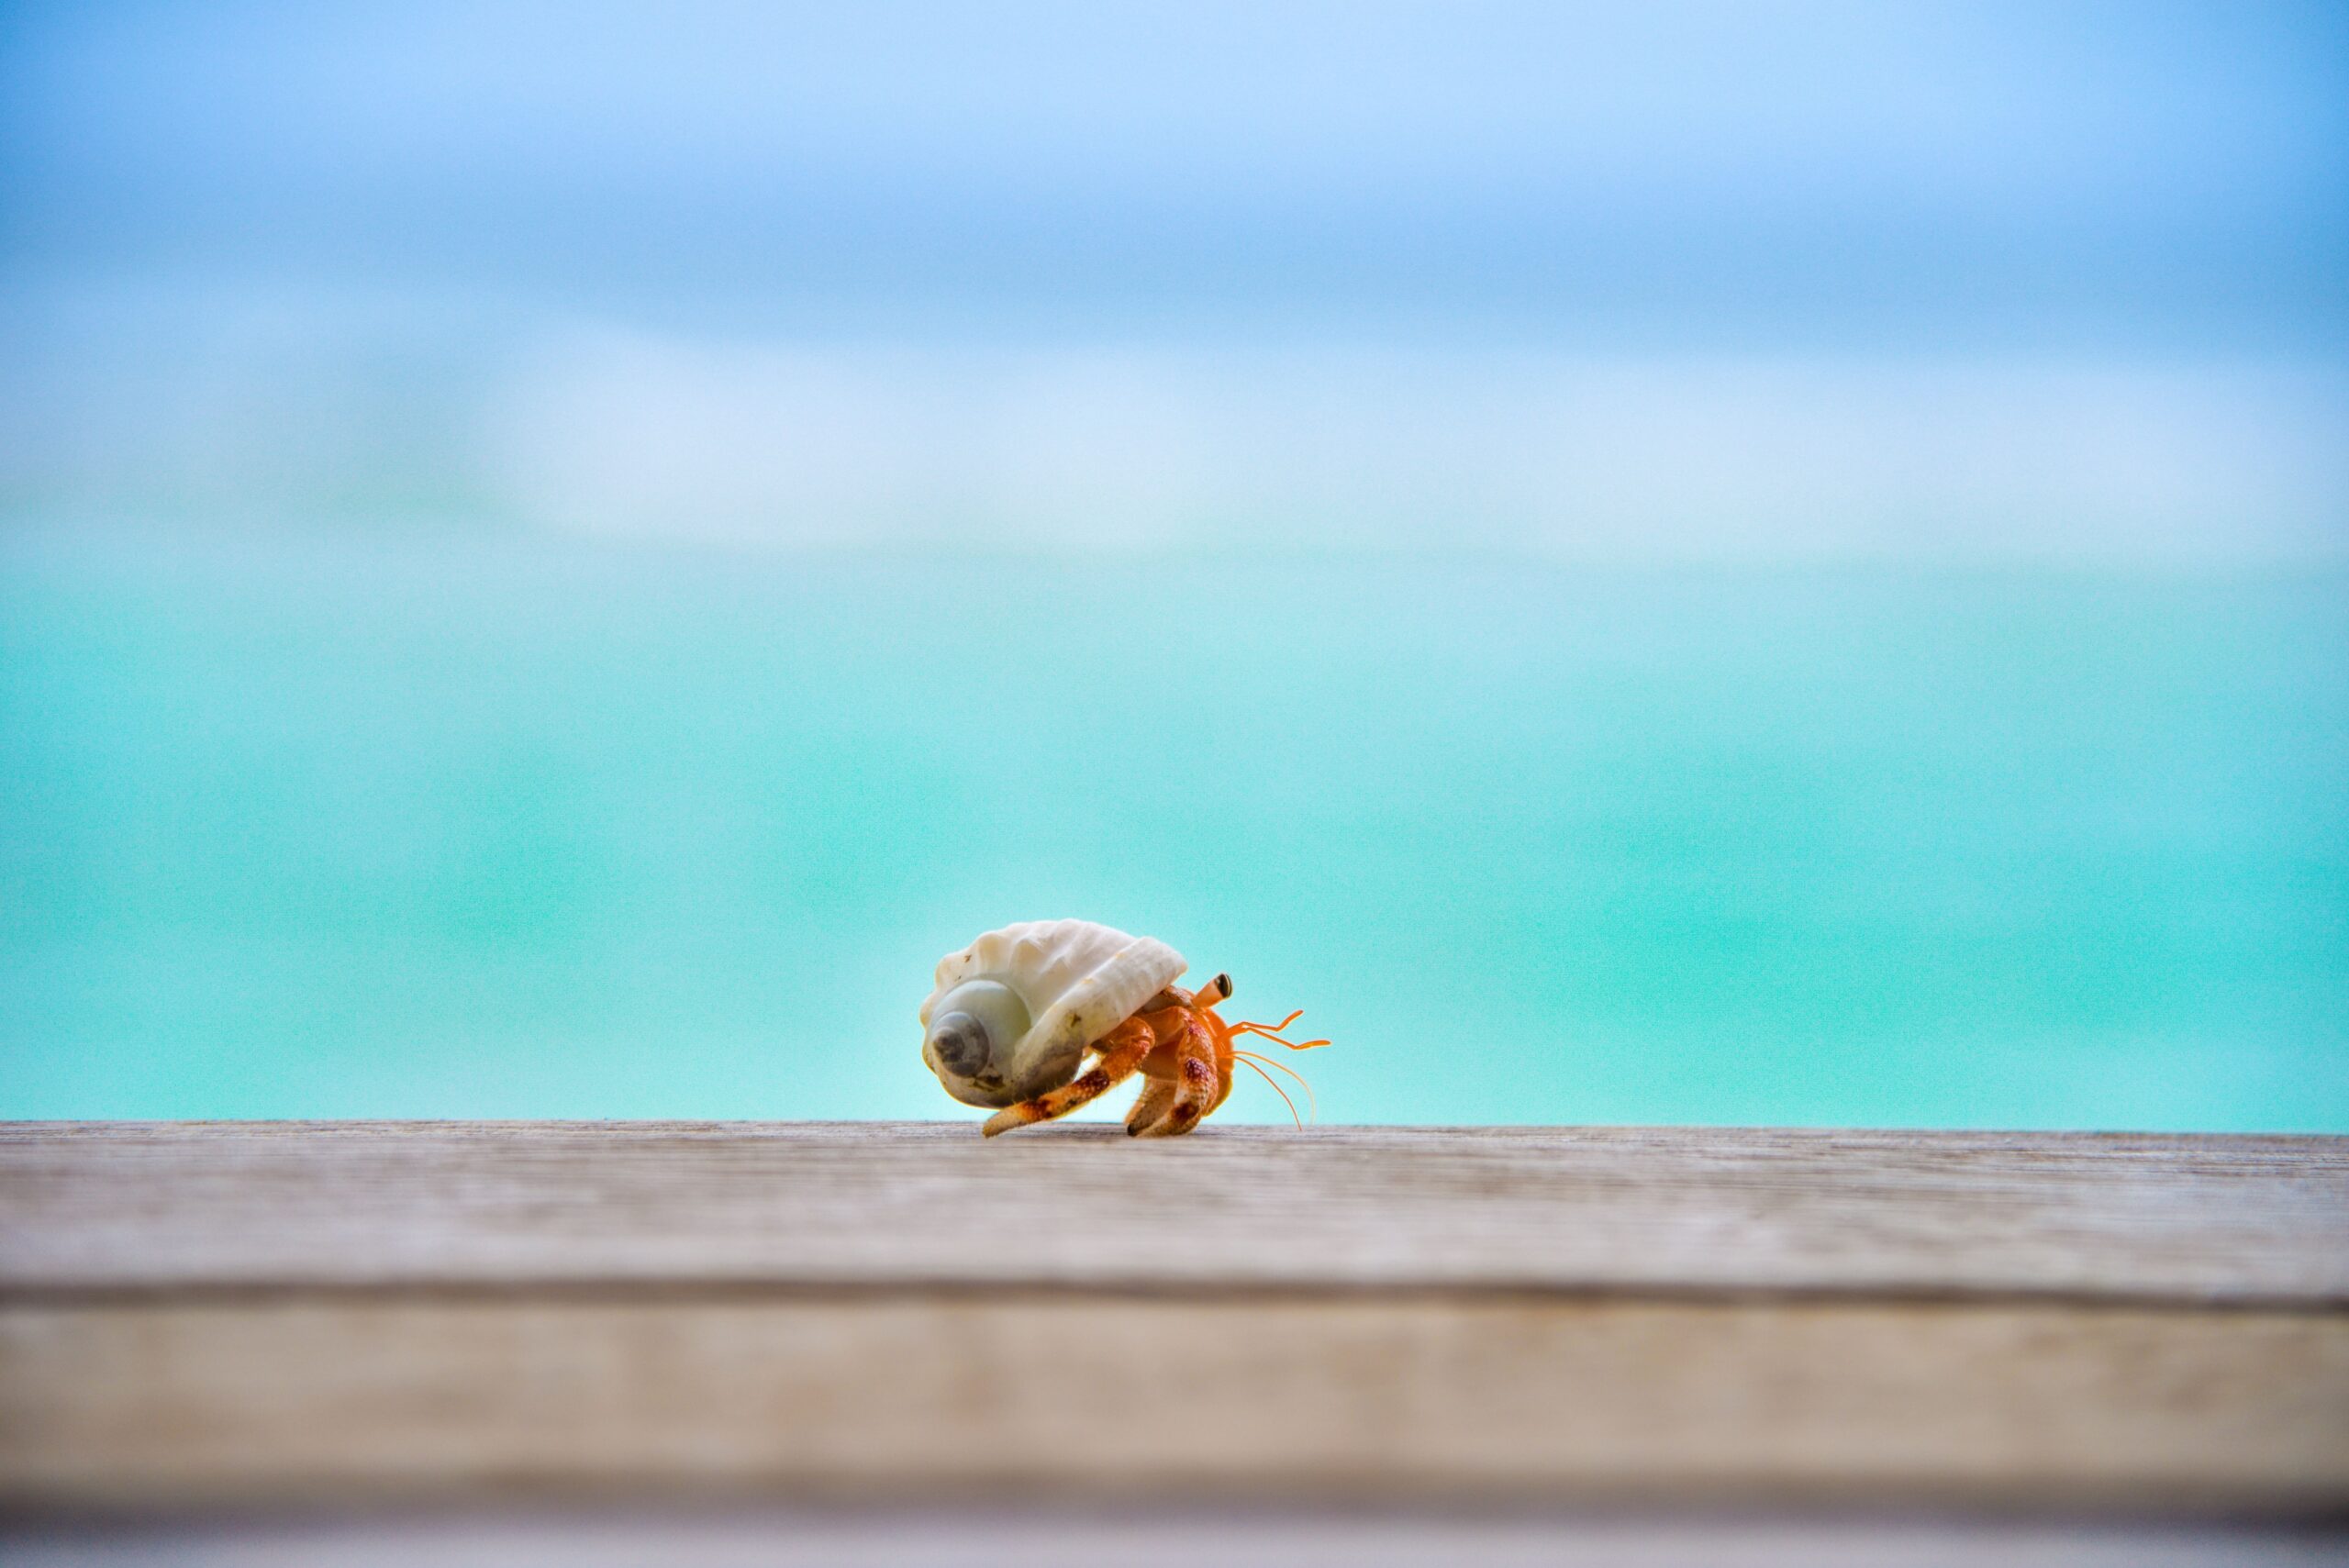 hermit crab walking across boardwalk with ocean behind